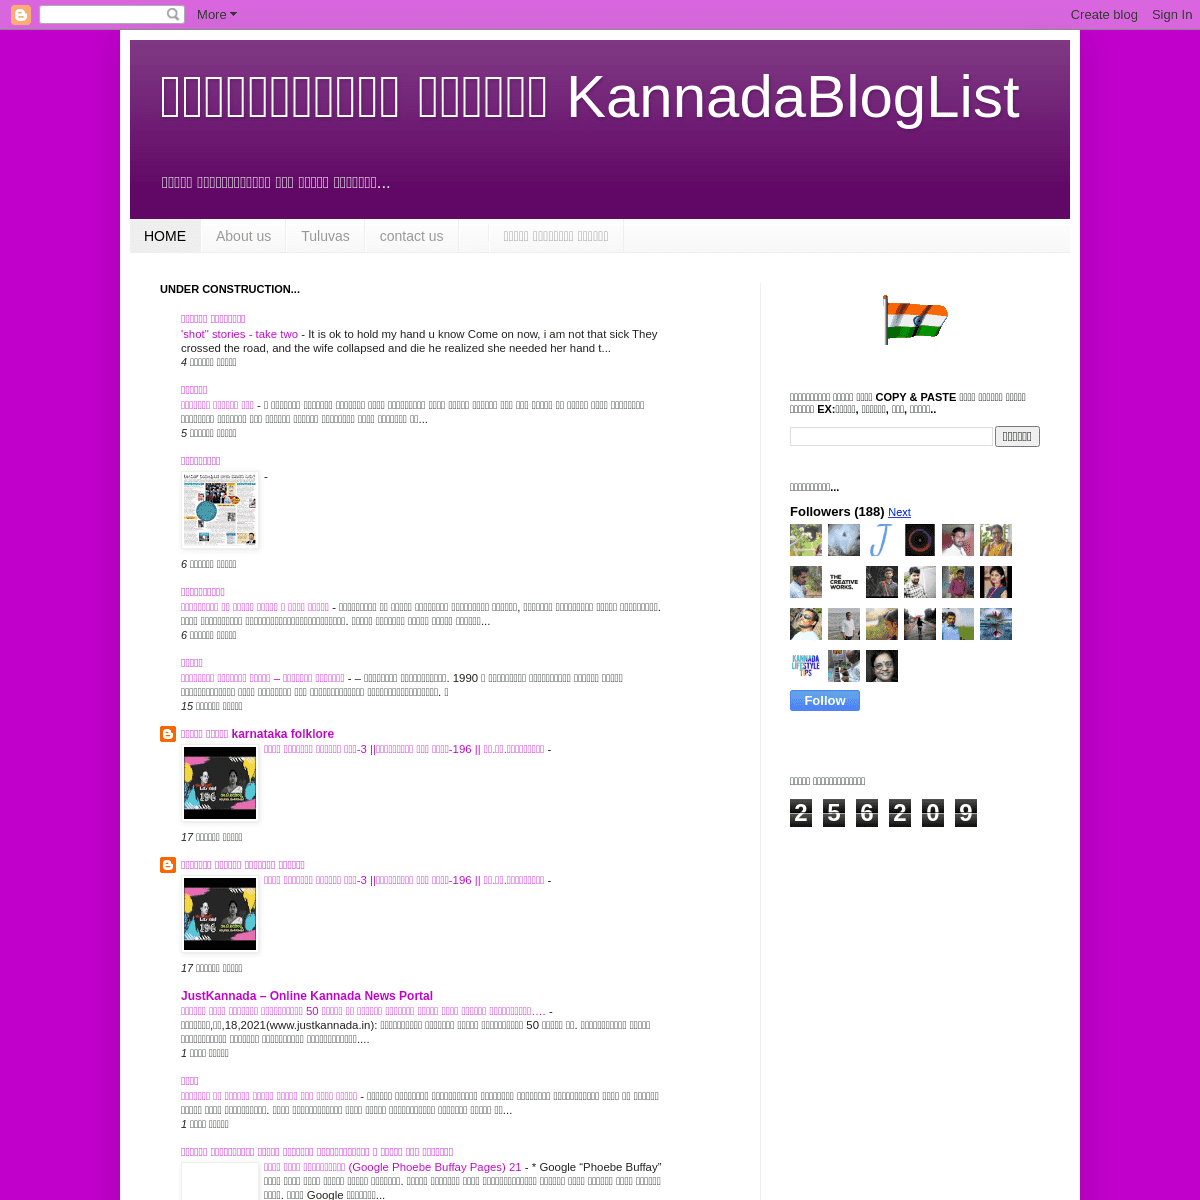 A complete backup of https://kannadabloglist.blogspot.com/